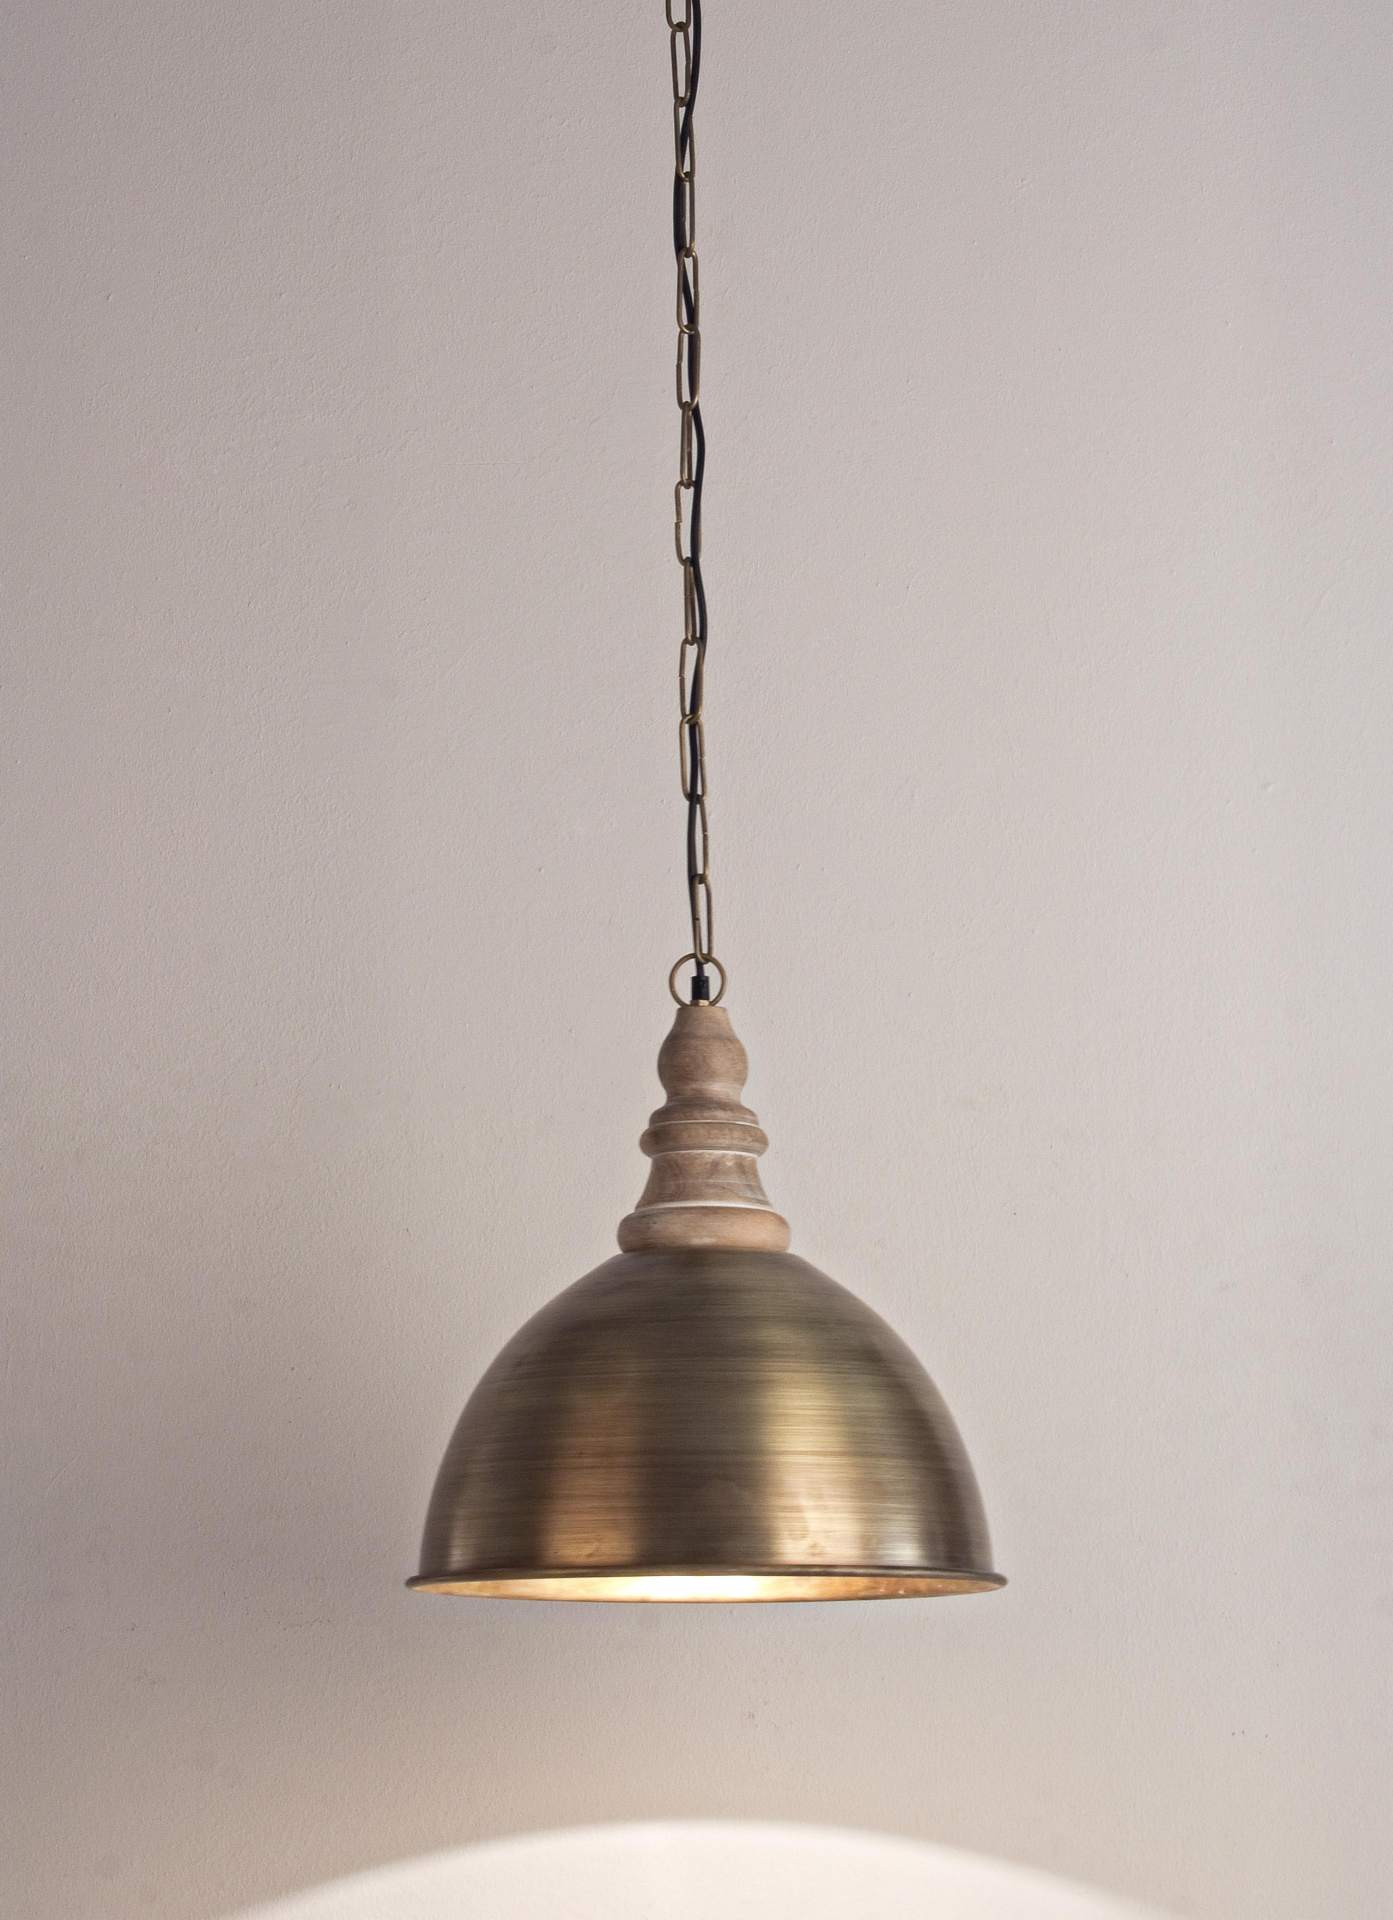 Die Hängeleuchte Zurine überzeugt mit ihrem klassischen Design. Gefertigt wurde sie aus Metall, welches einen goldene Farbton besitzt. Das Gestell ist auch aus Metall. Die Lampe besitzt eine Höhe von 45 cm.